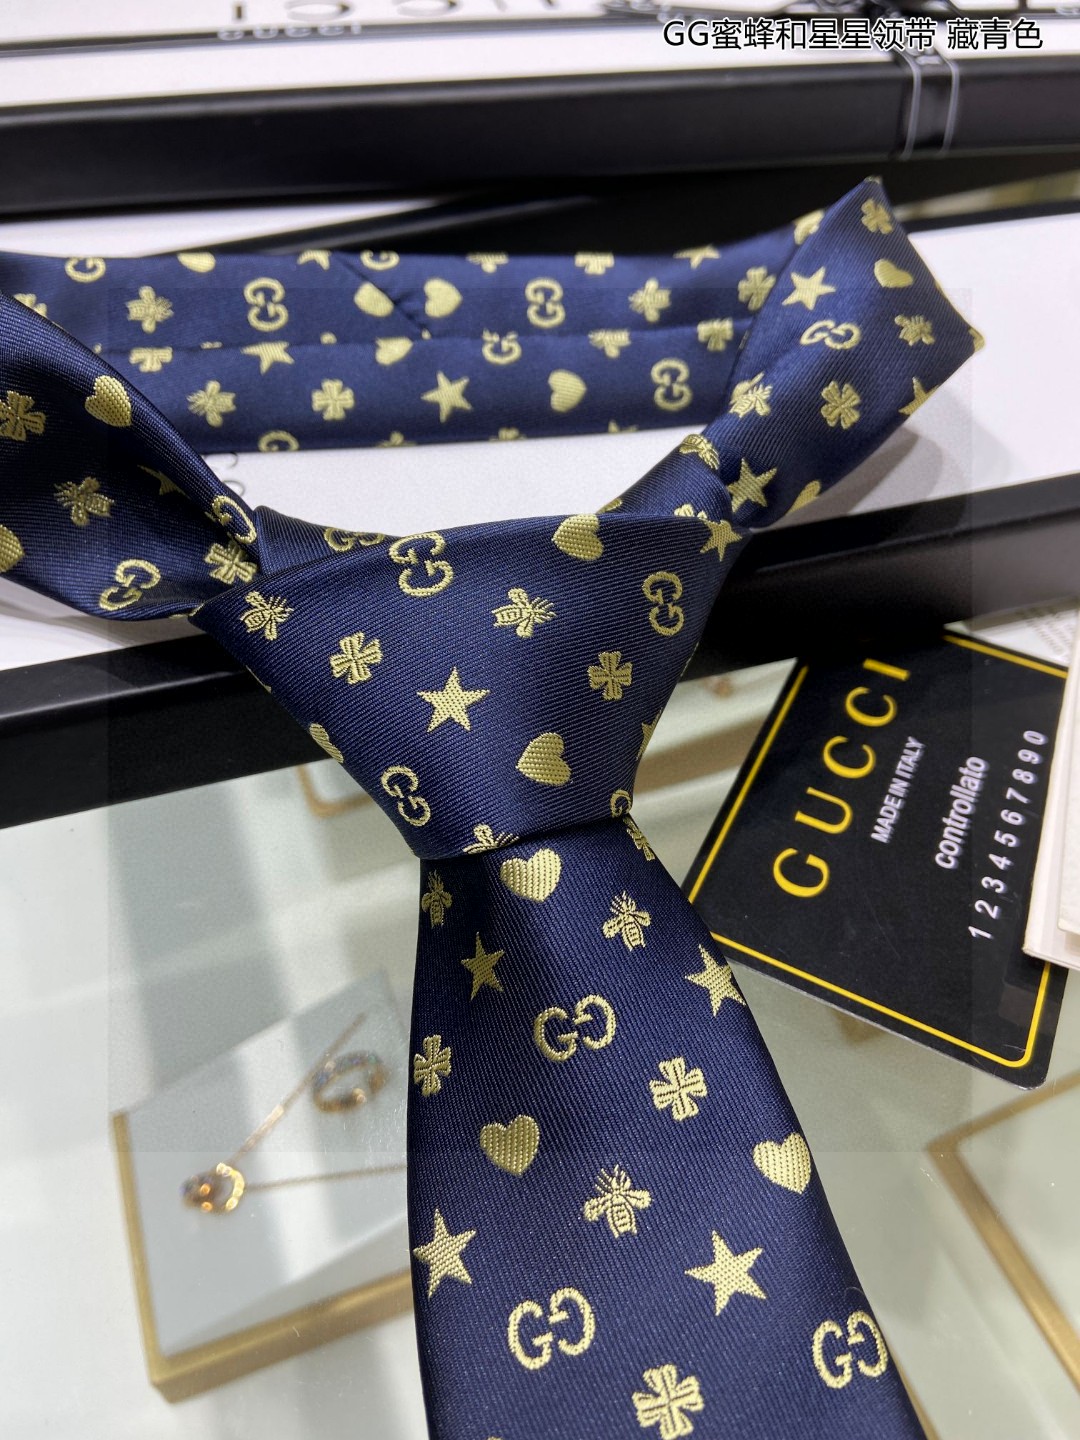 G家专柜新款男士领带GG蜜蜂和星星领带稀有采用经典小GLOGO提花展现精湛手工与时尚优雅的理想选择这款领